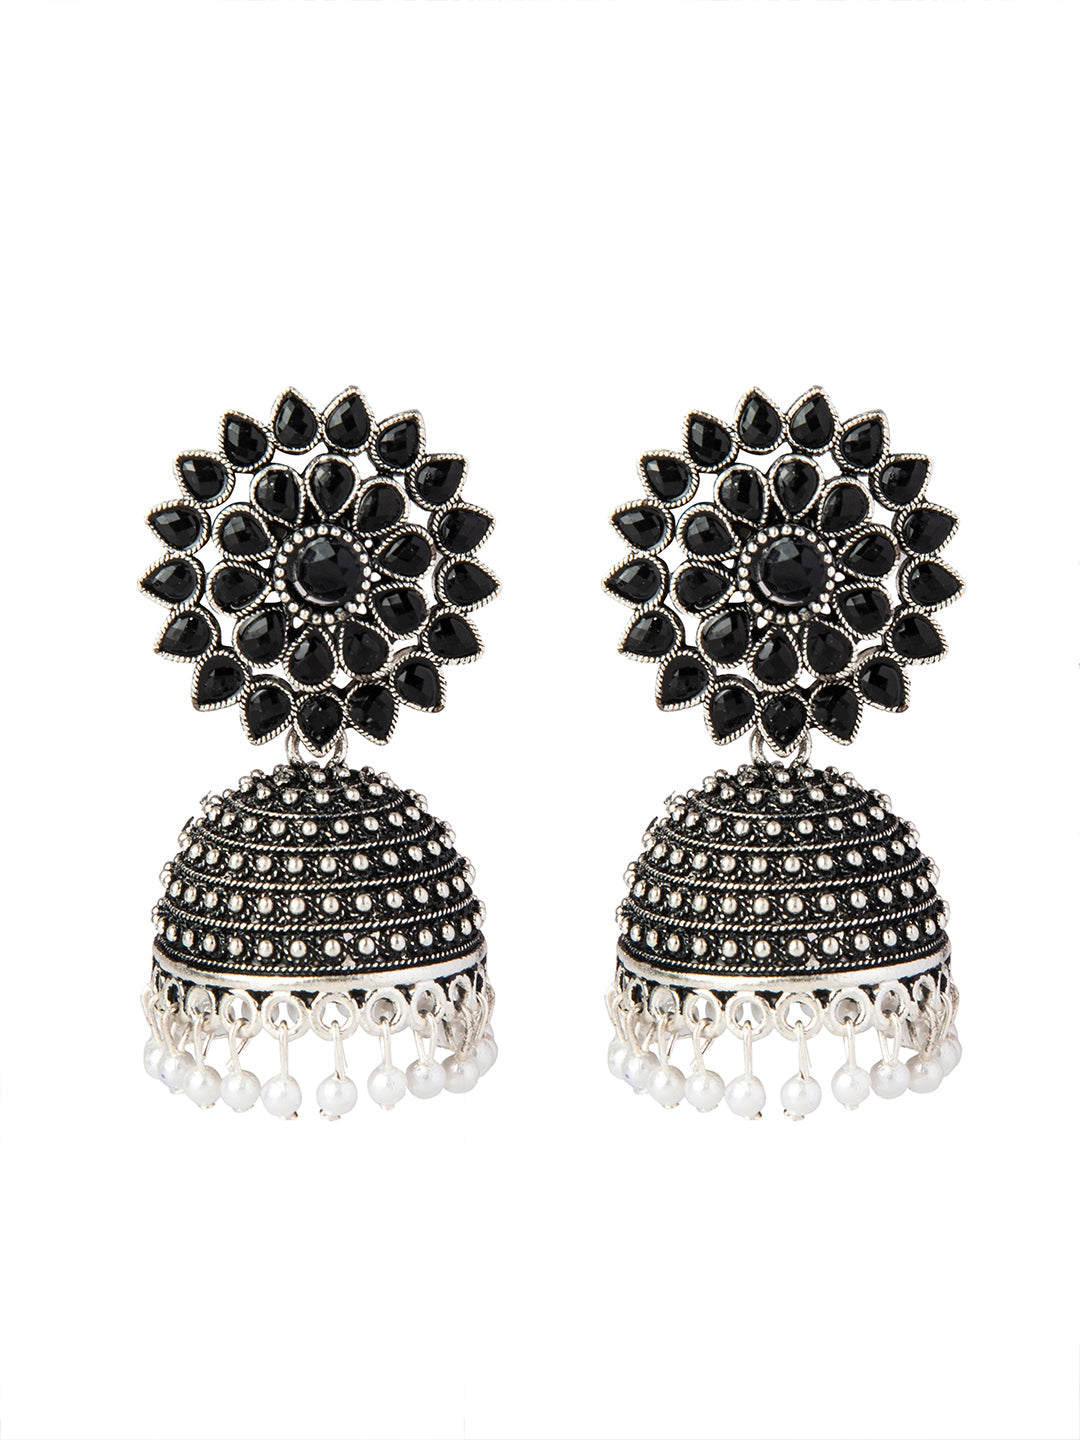 Black Rose Earrings Women | Ethnic Earrings Black Stones | Earrings Flower  Black Color - Dangle Earrings - Aliexpress